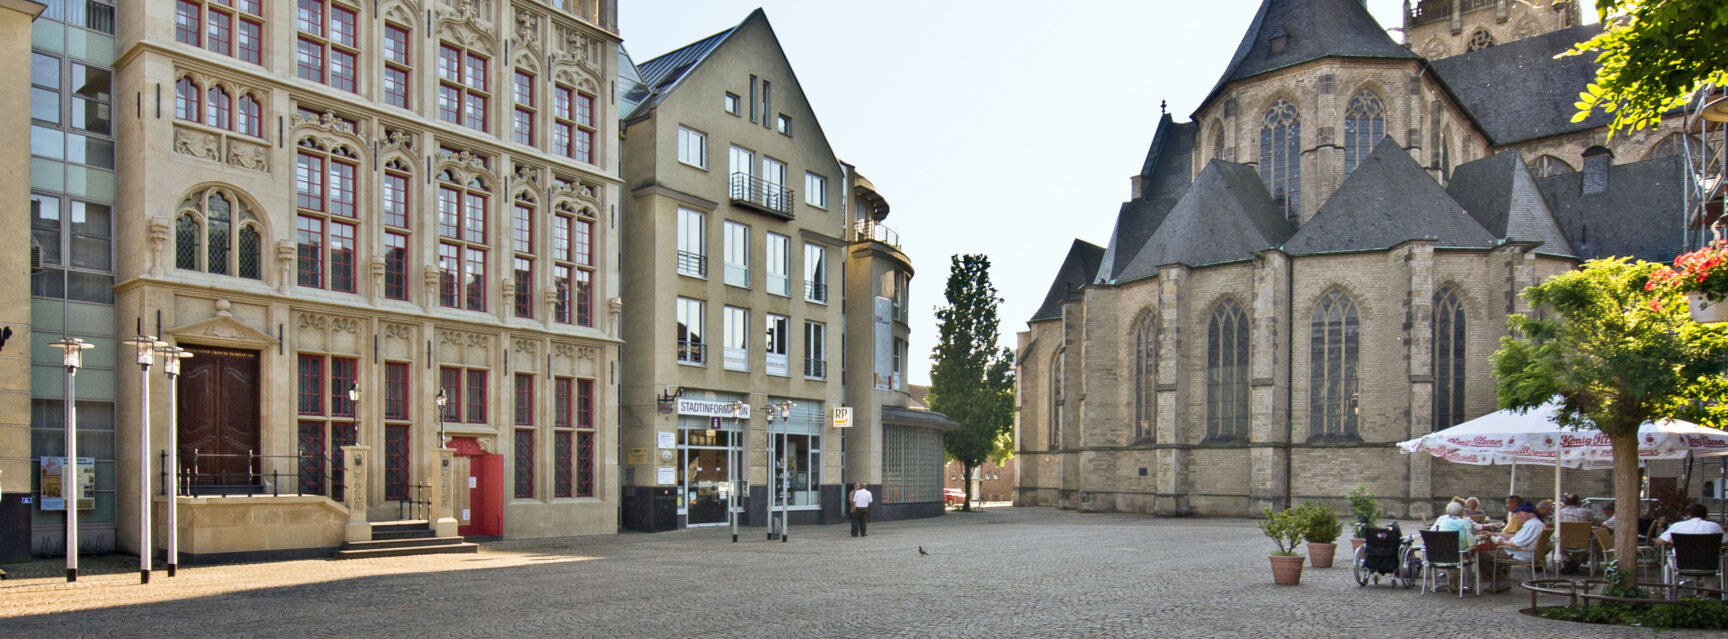 Großer Markt mit Rathausfassade und Dom © Jürgen Bosmann